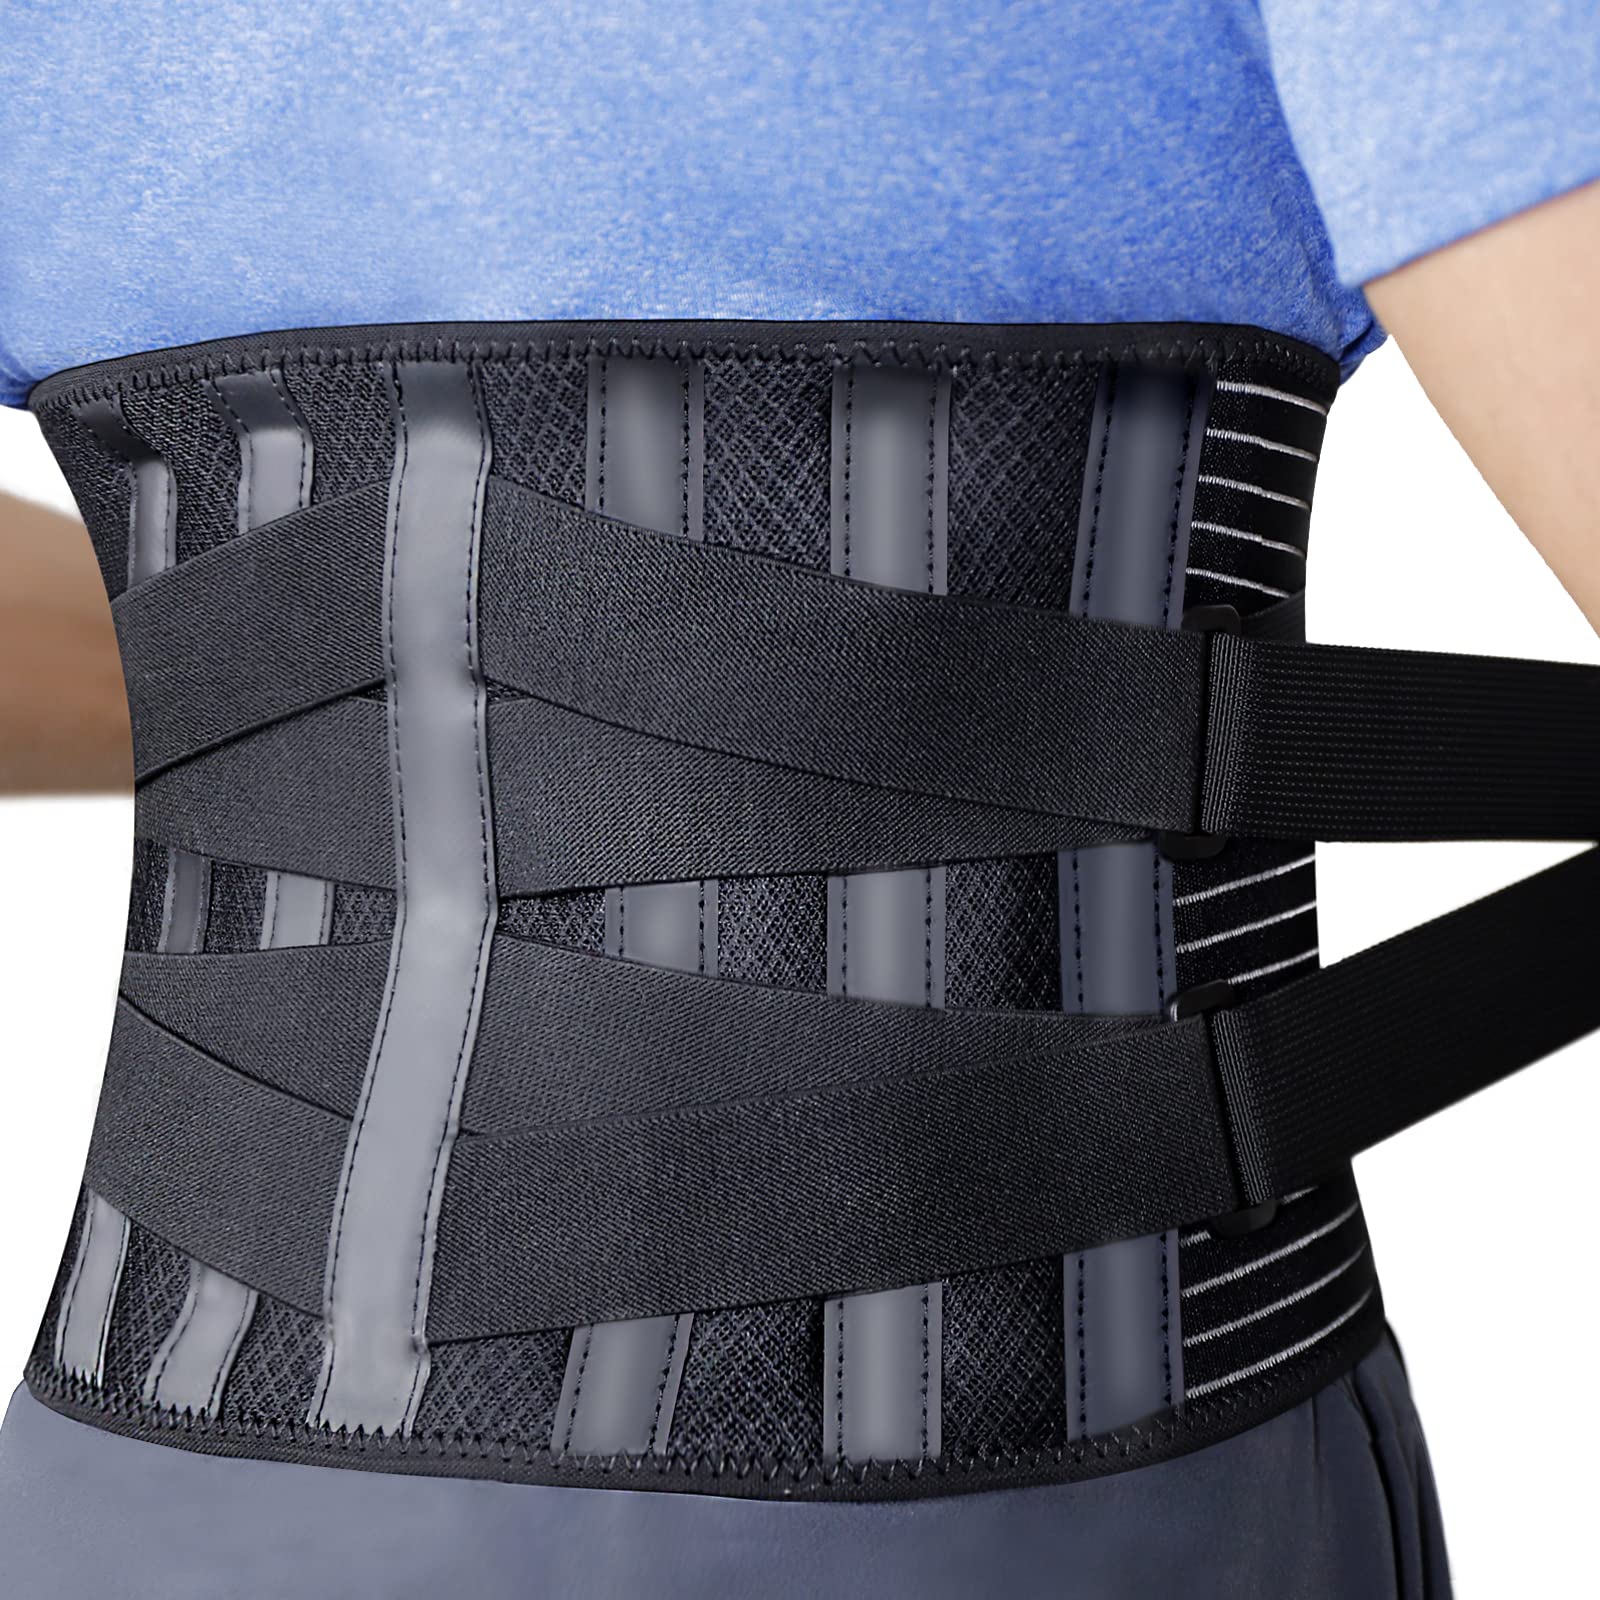 Back Brace For Women, Men Velcro Back Support, Back Support Belt For Women, Back  Brace For Lower Back Pain Women